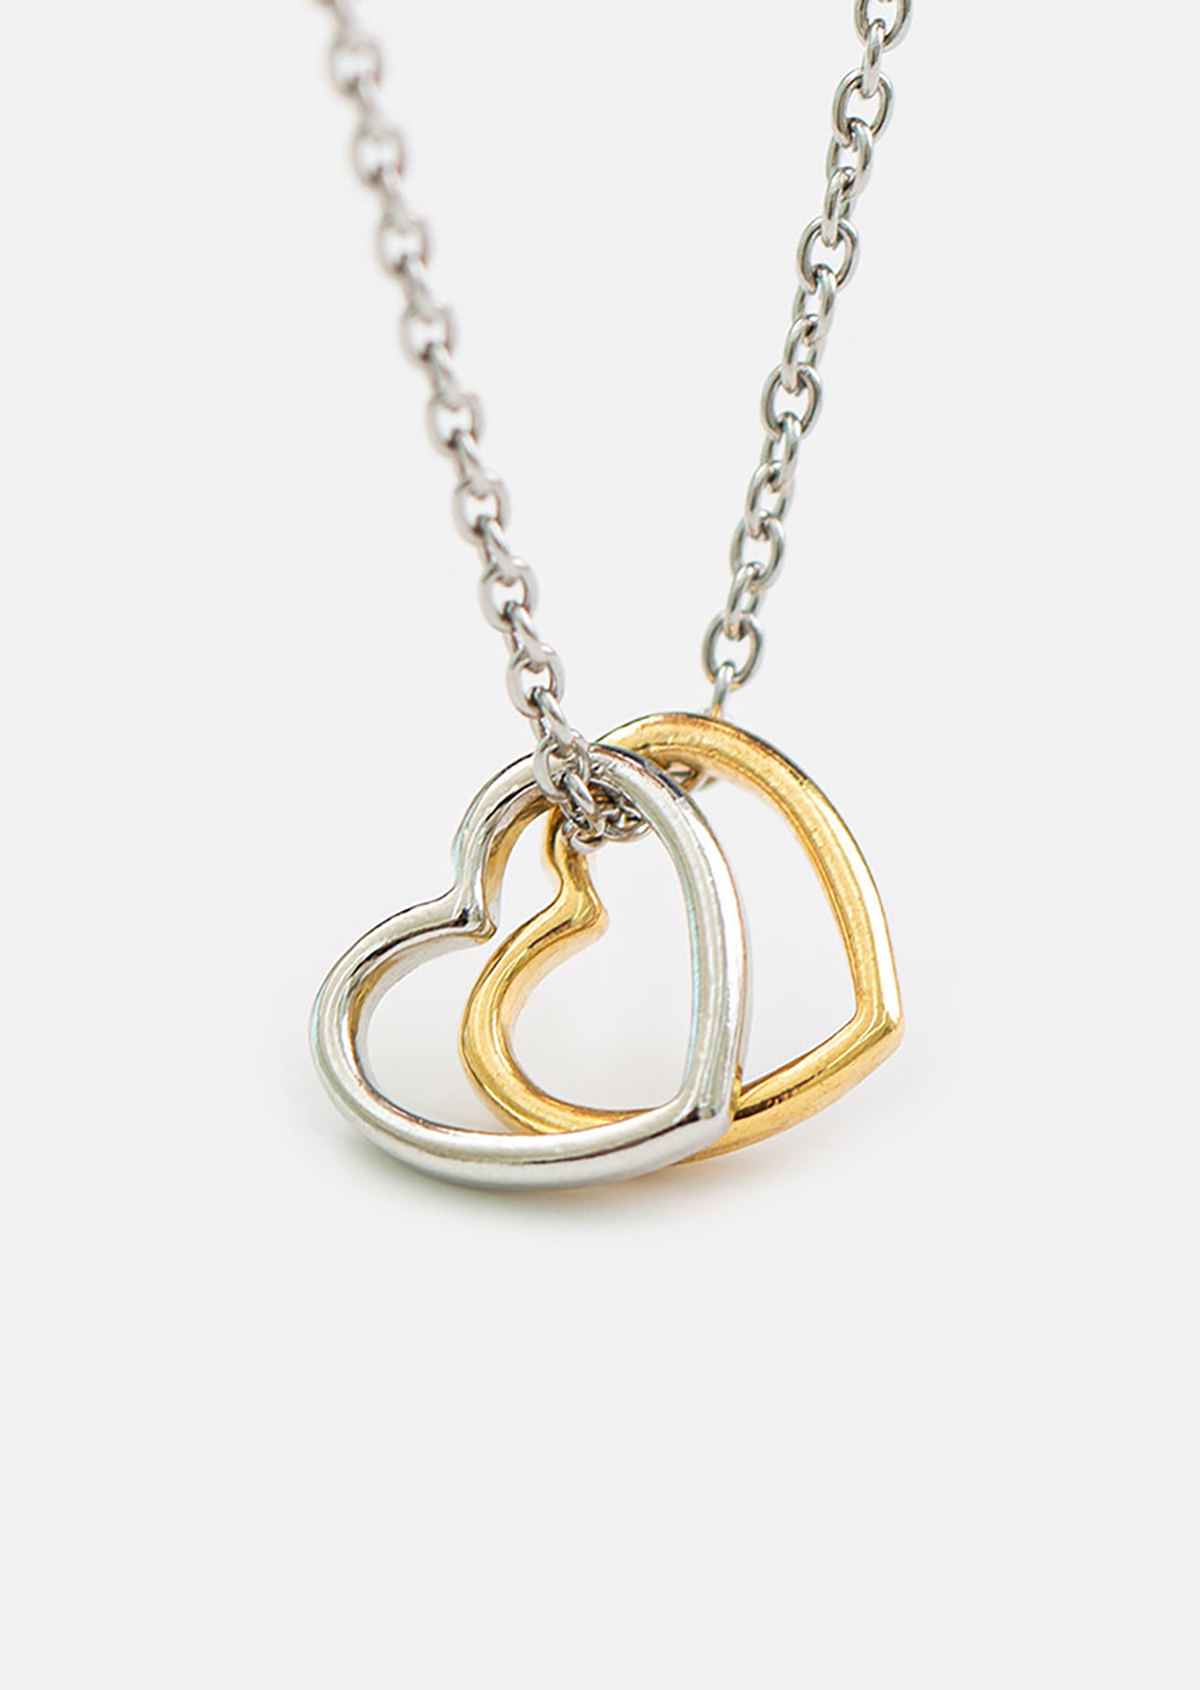 JONGJONGdouble heart necklace자체브랜드